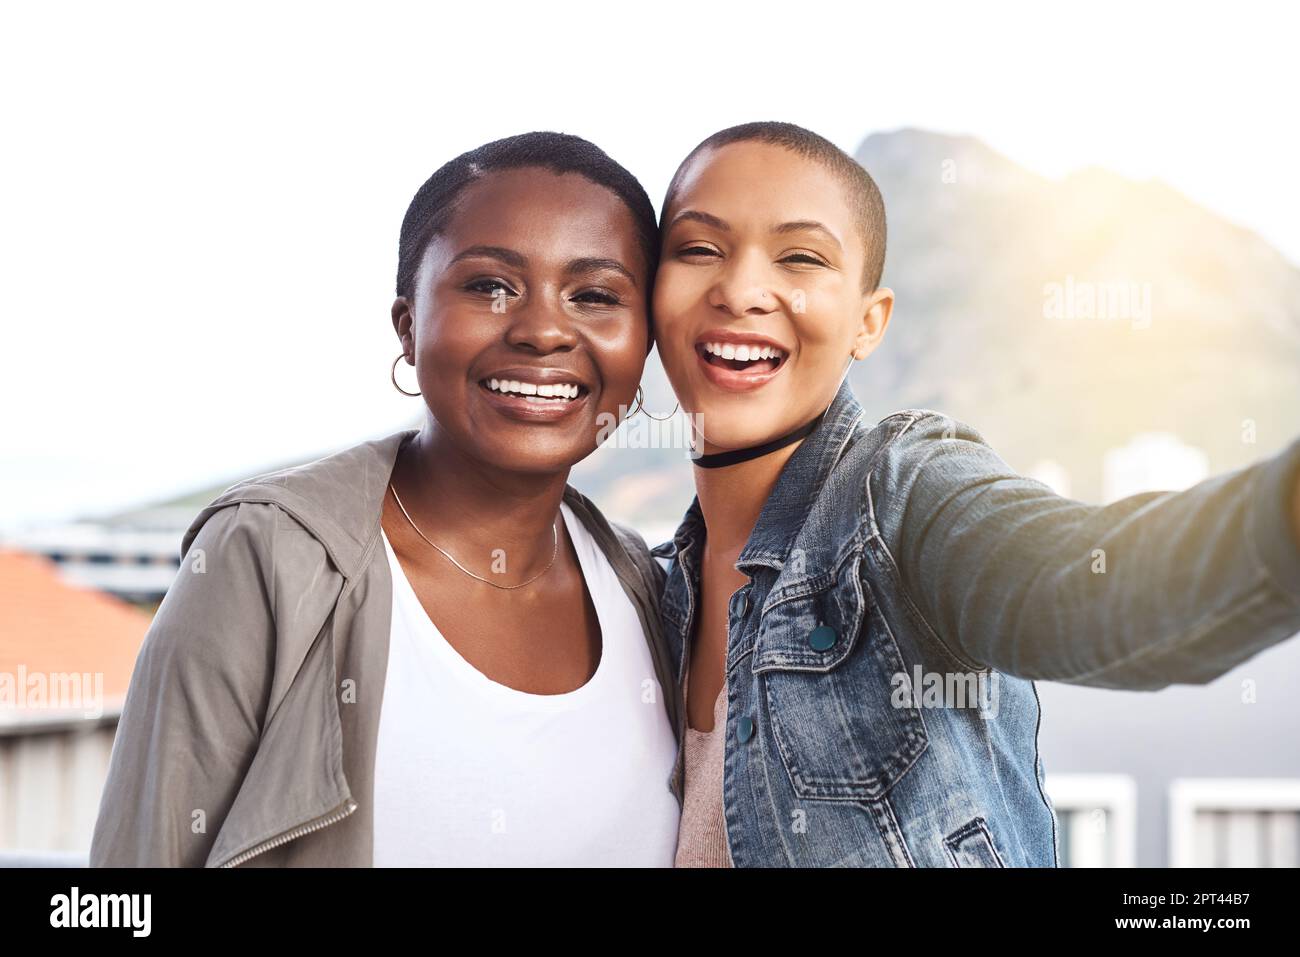 Riunita finalmente. Ritratto di due giovani donne sorridenti e in posa mentre scattano un selfie in città Foto Stock